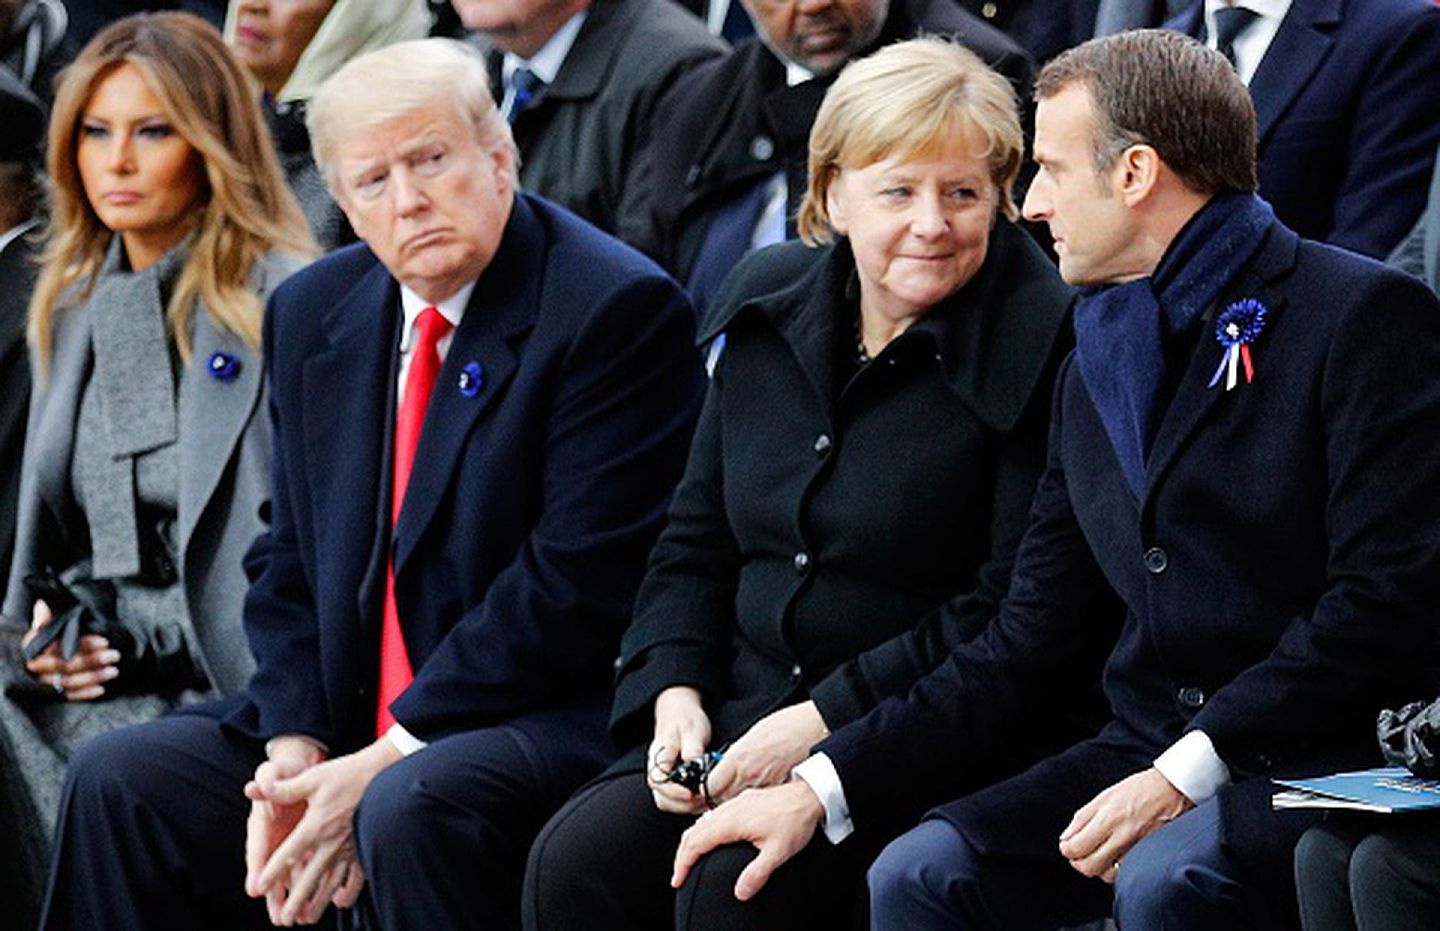 2018年11月11日，在巴黎举行的一战结束百年的纪念活动中，德国总理默克尔与法国总统马克龙交谈。远道而来的时任美国总统特朗普（Donald Trump）则显出某种无法插话的局促。（Getty Images）